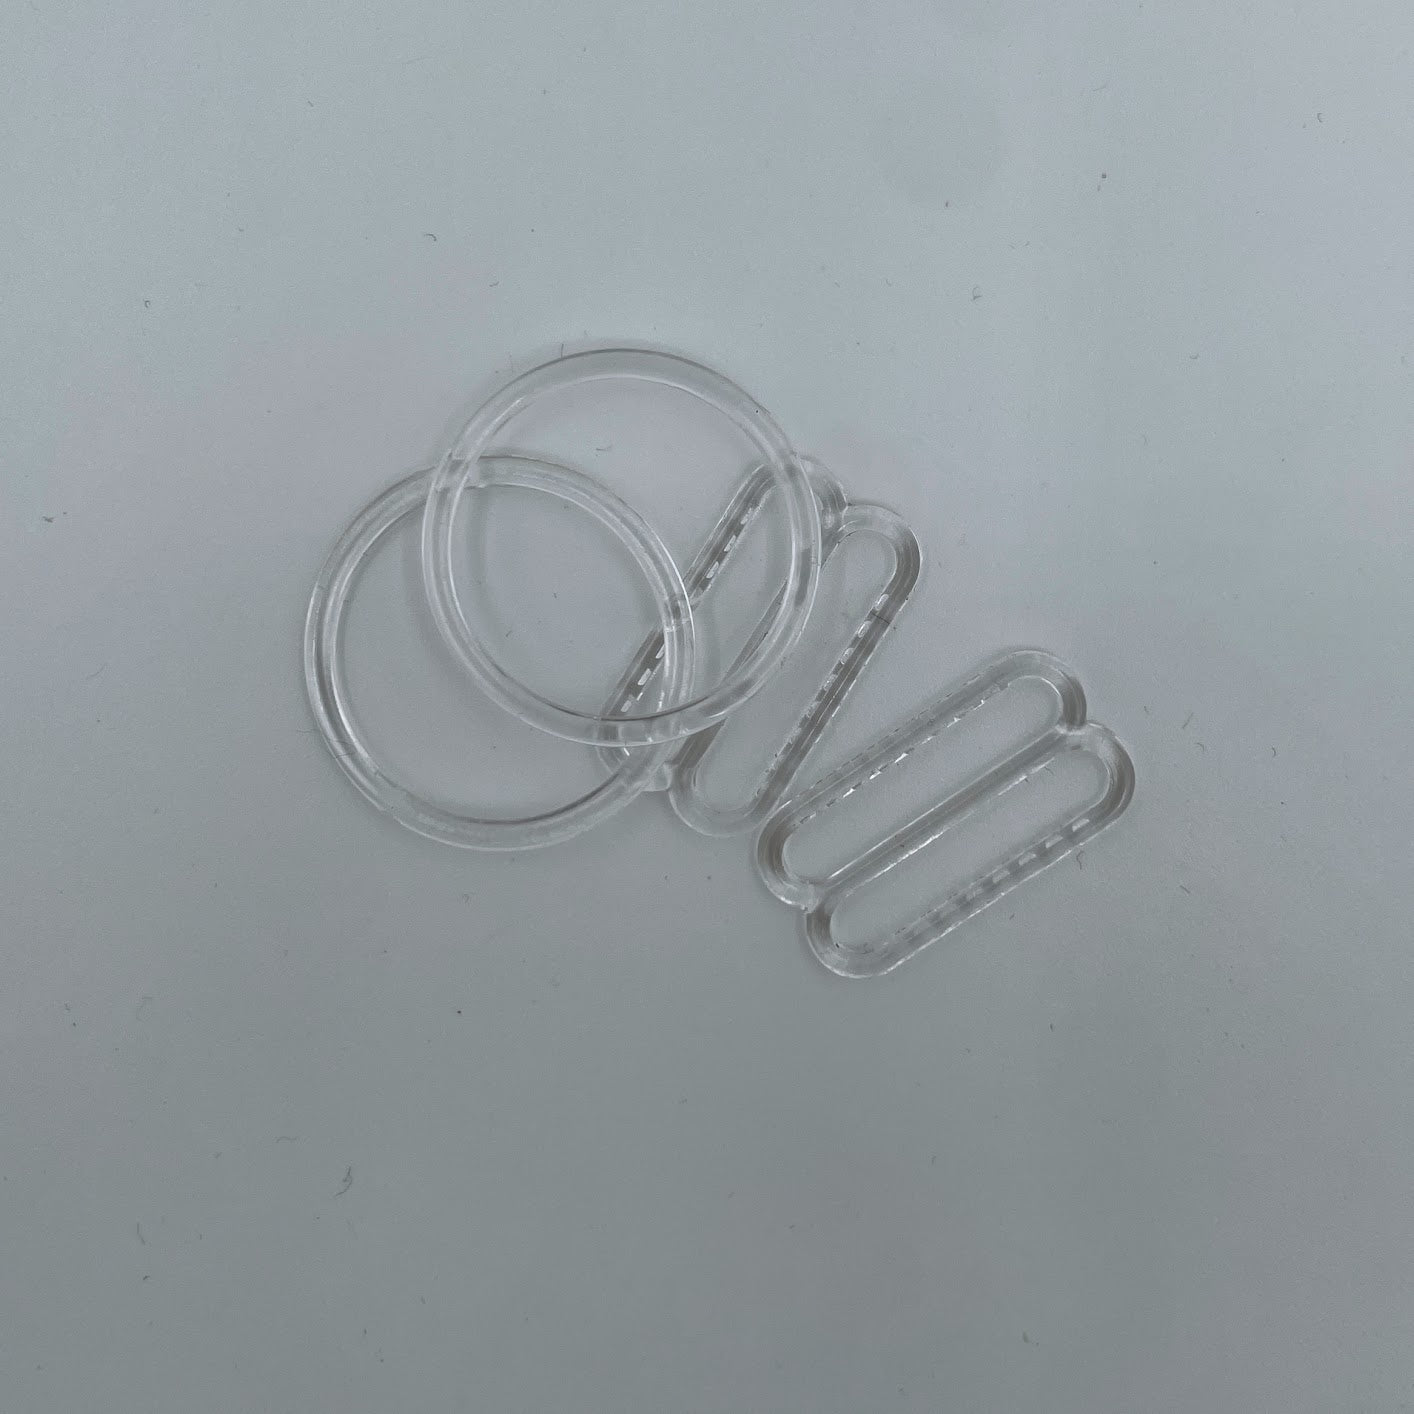 Flexible Plastic Rings and Sliders for 20mm Bra Elastic - per Pair